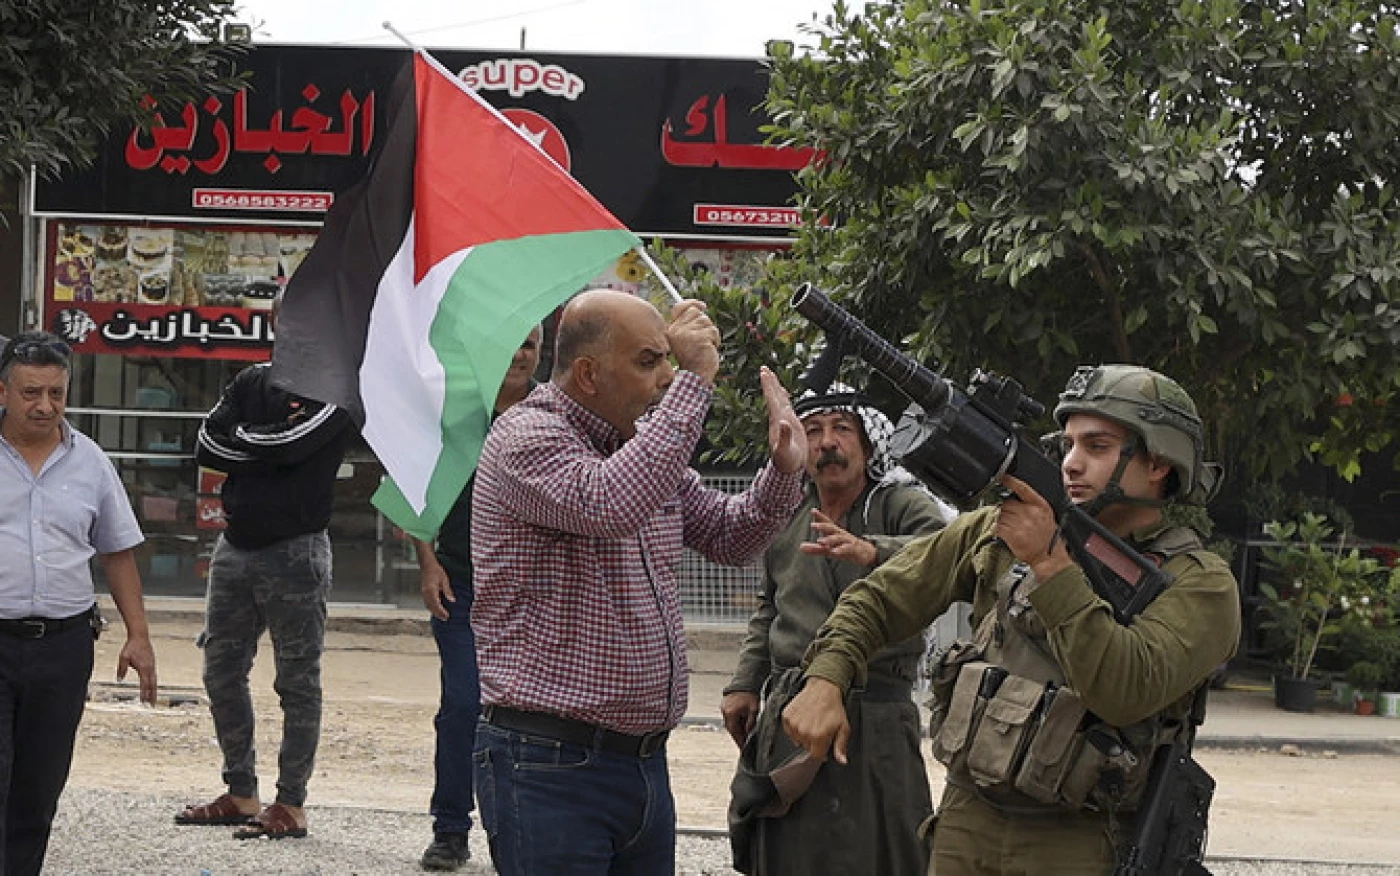 Hamas leader in West Bank dies in Israeli custody Image